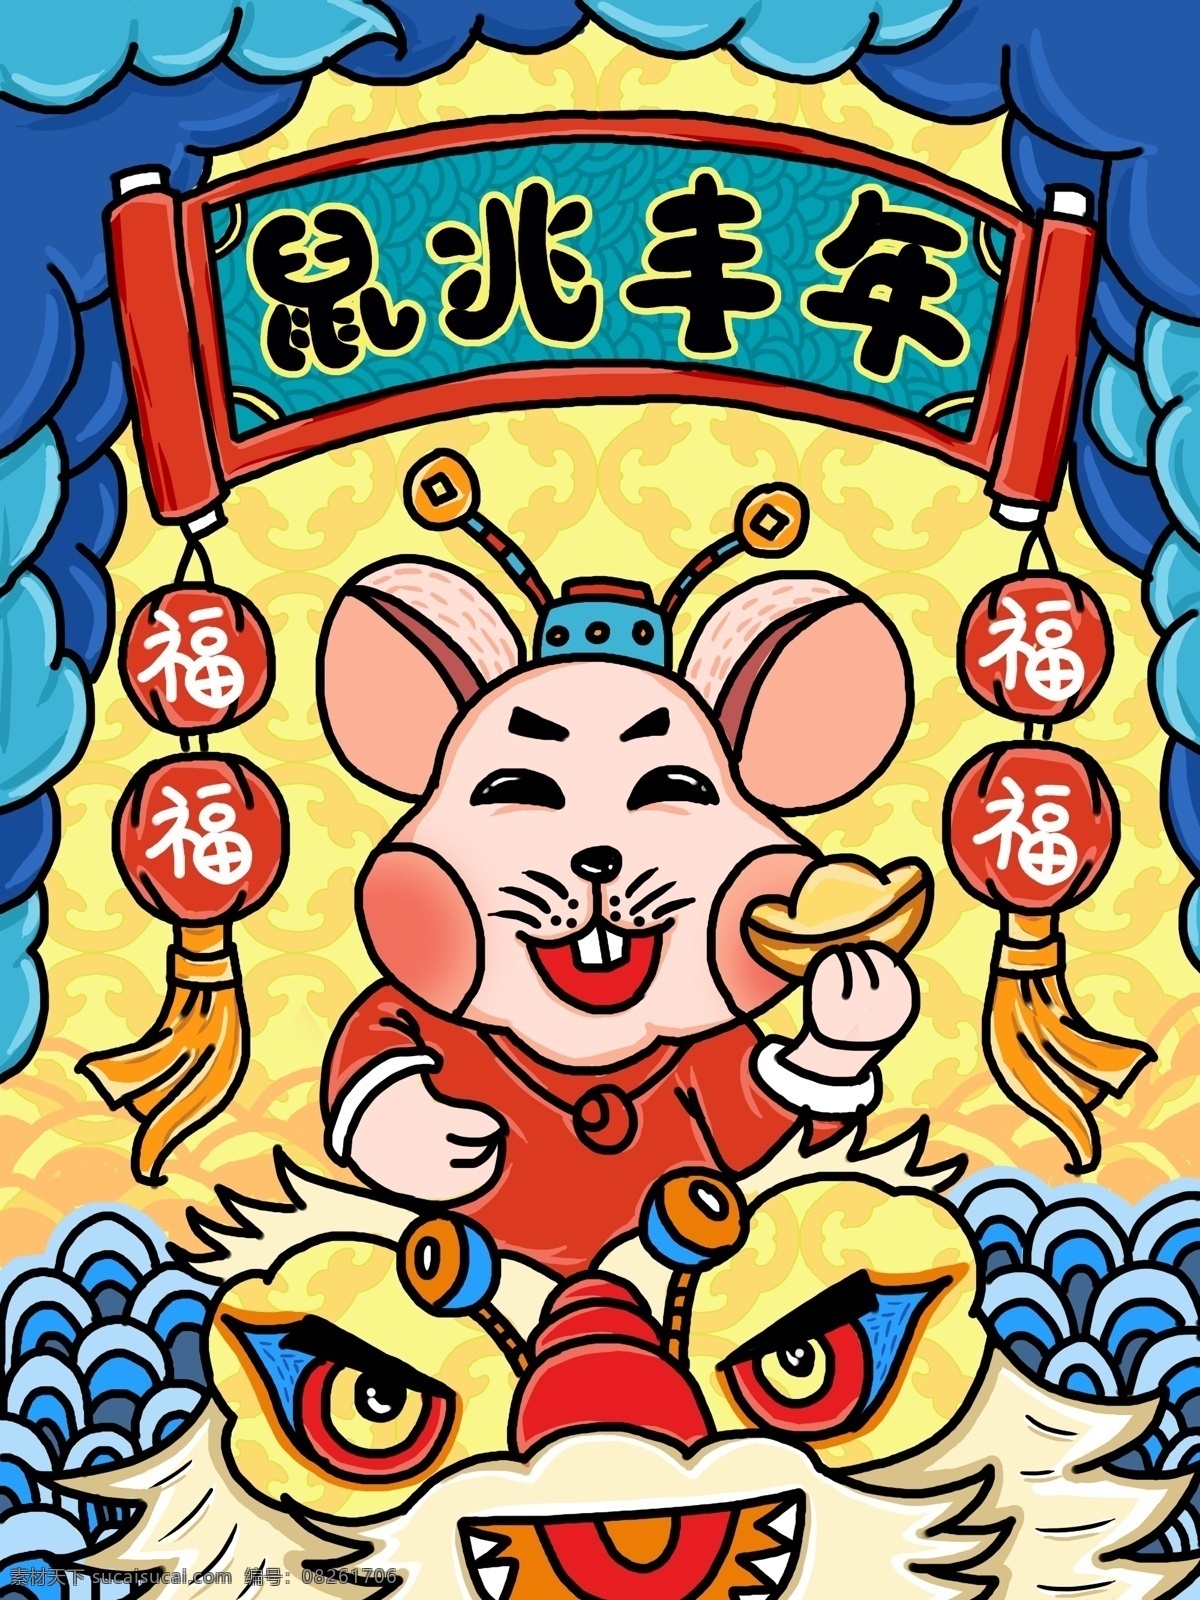 鼠年 2020 鼠 兆 丰年 老鼠 舞狮 福气 新年 春节 节日节气